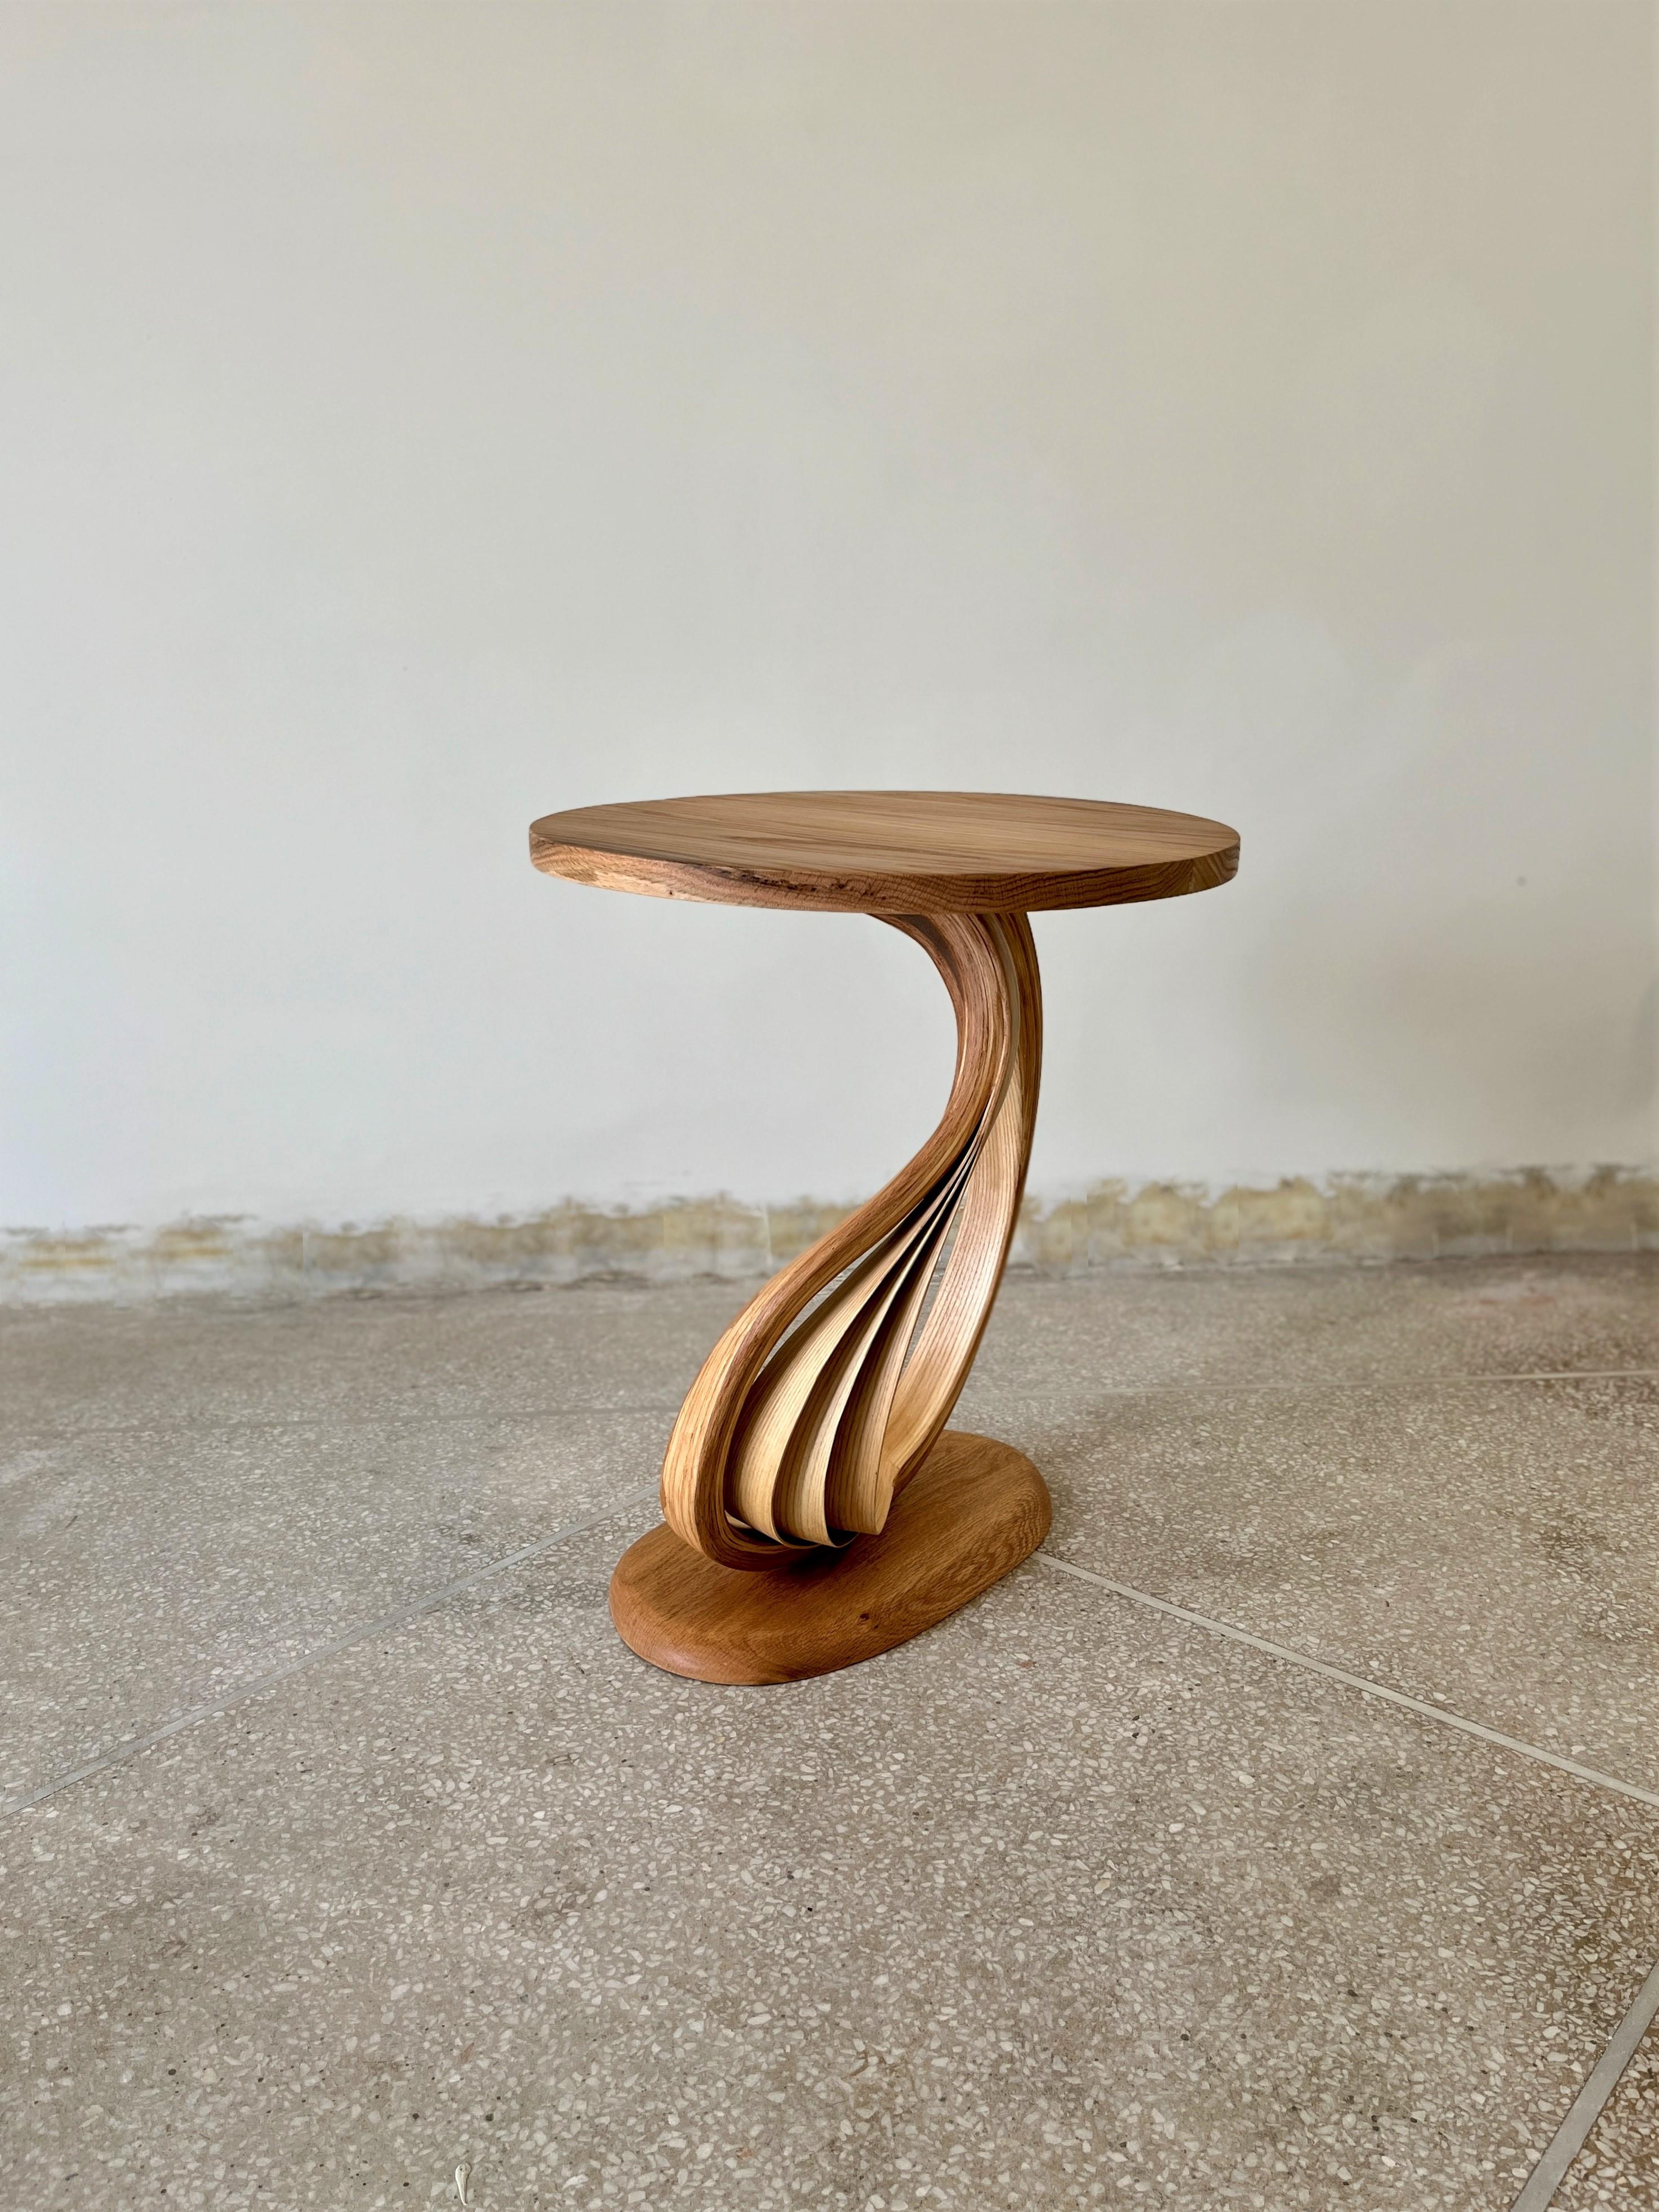 Pars Side Tabel est un modèle en bois courbé fabriqué par Raka Studio.

L'élément principal de cette pièce est le mouvement organique du bois courbé entre le plateau et la base. Les proportions du plateau et de la base sont faites pour mettre en